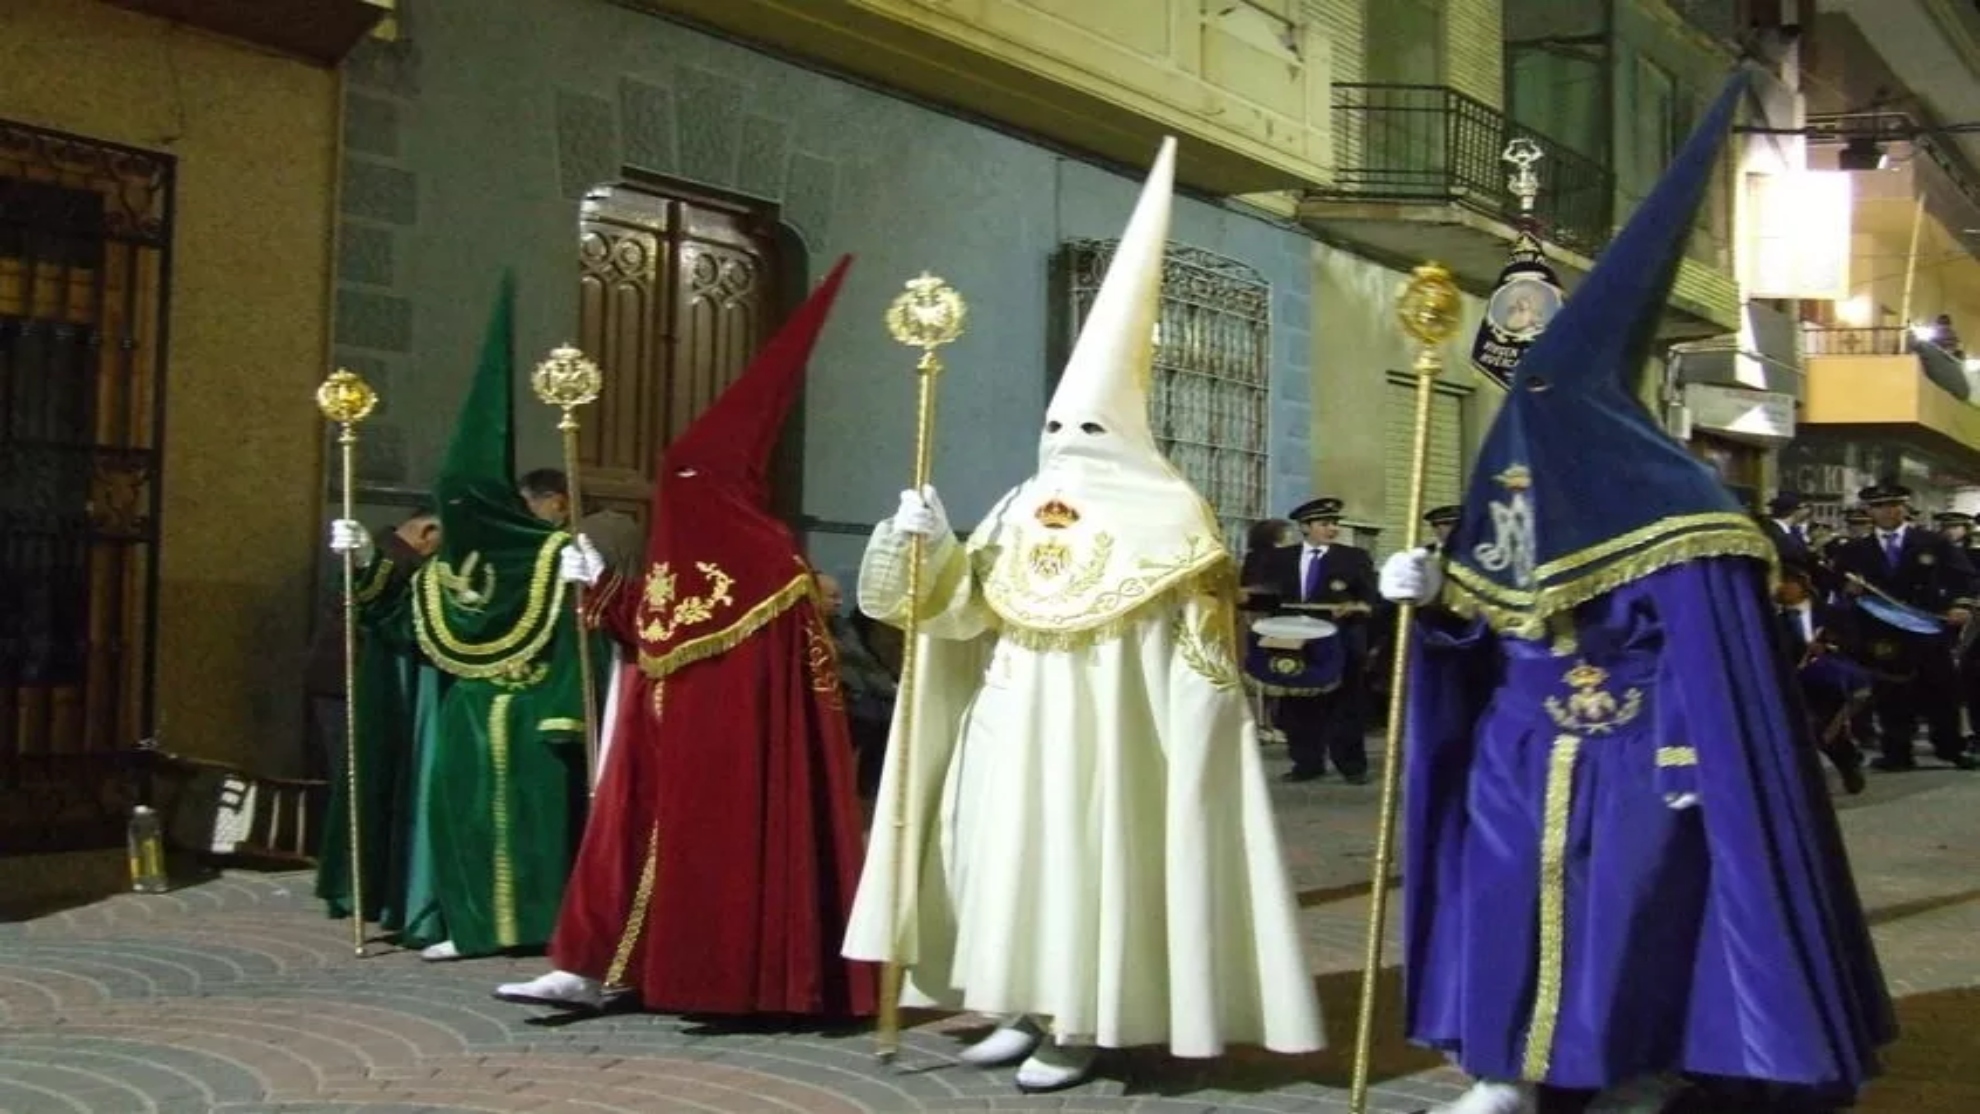 Semana Santa 2023: Este es el significado de cada color en las procesiones: morado, negro, blanco...